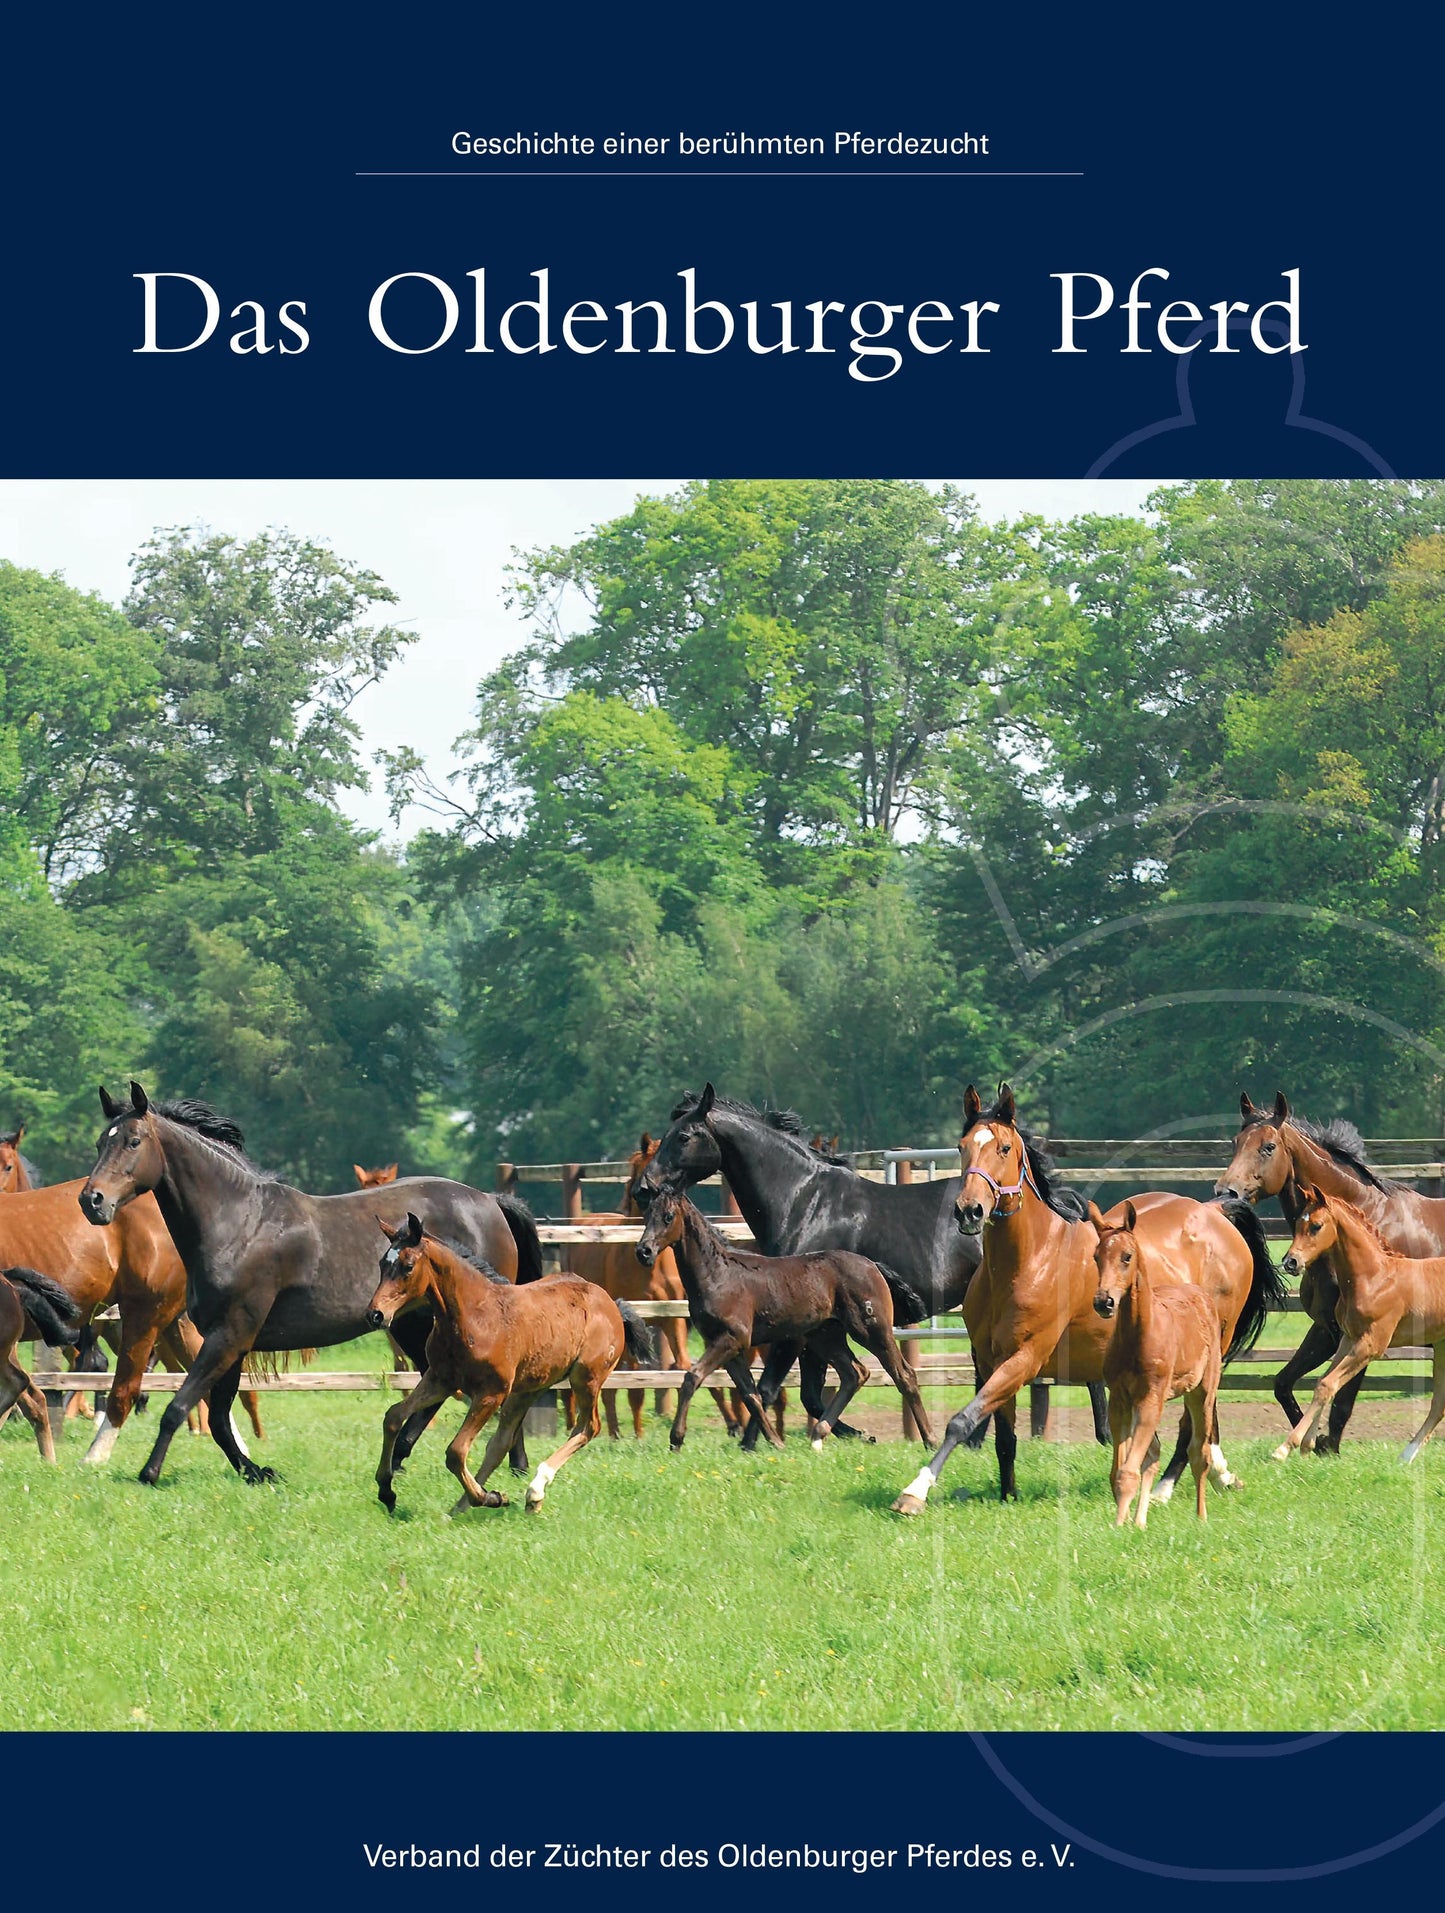 Das Oldenburger Pferd